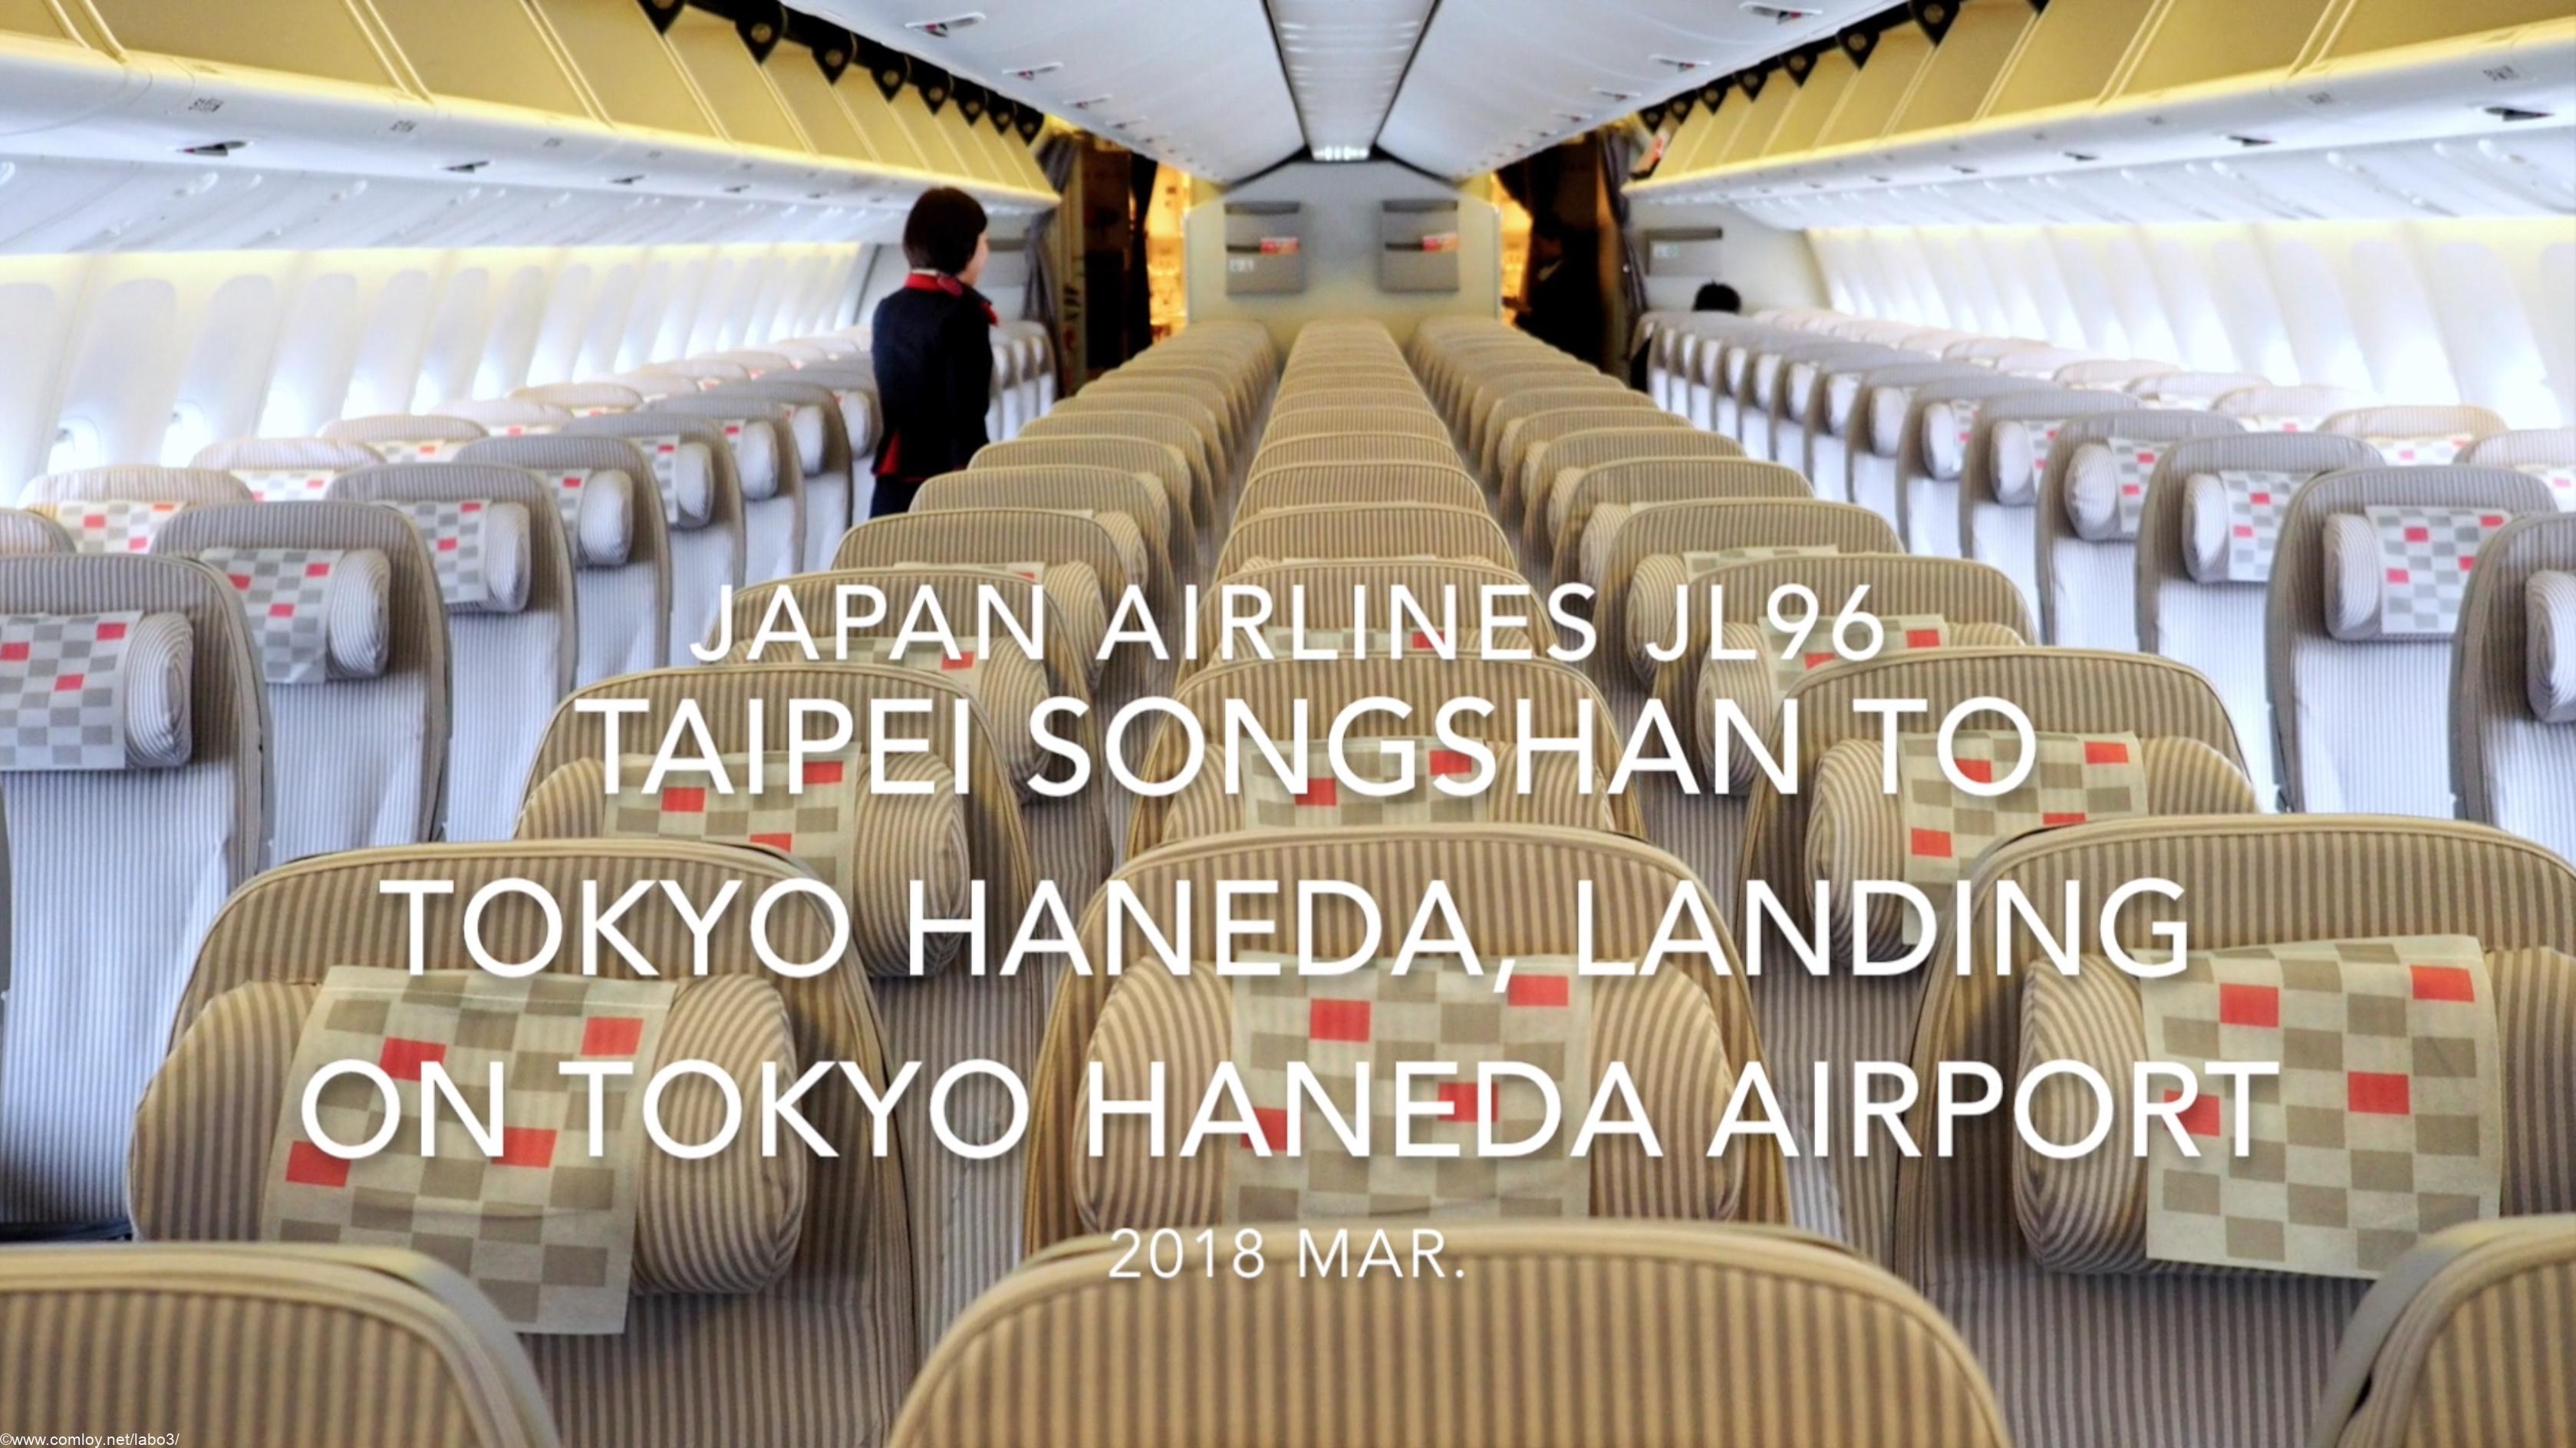 【機内から離着陸映像】2018 Mar Japan Airlines JL96 Taipei Songshan to TOKYO HANEDA, Landing on Tokyo Haneda airport